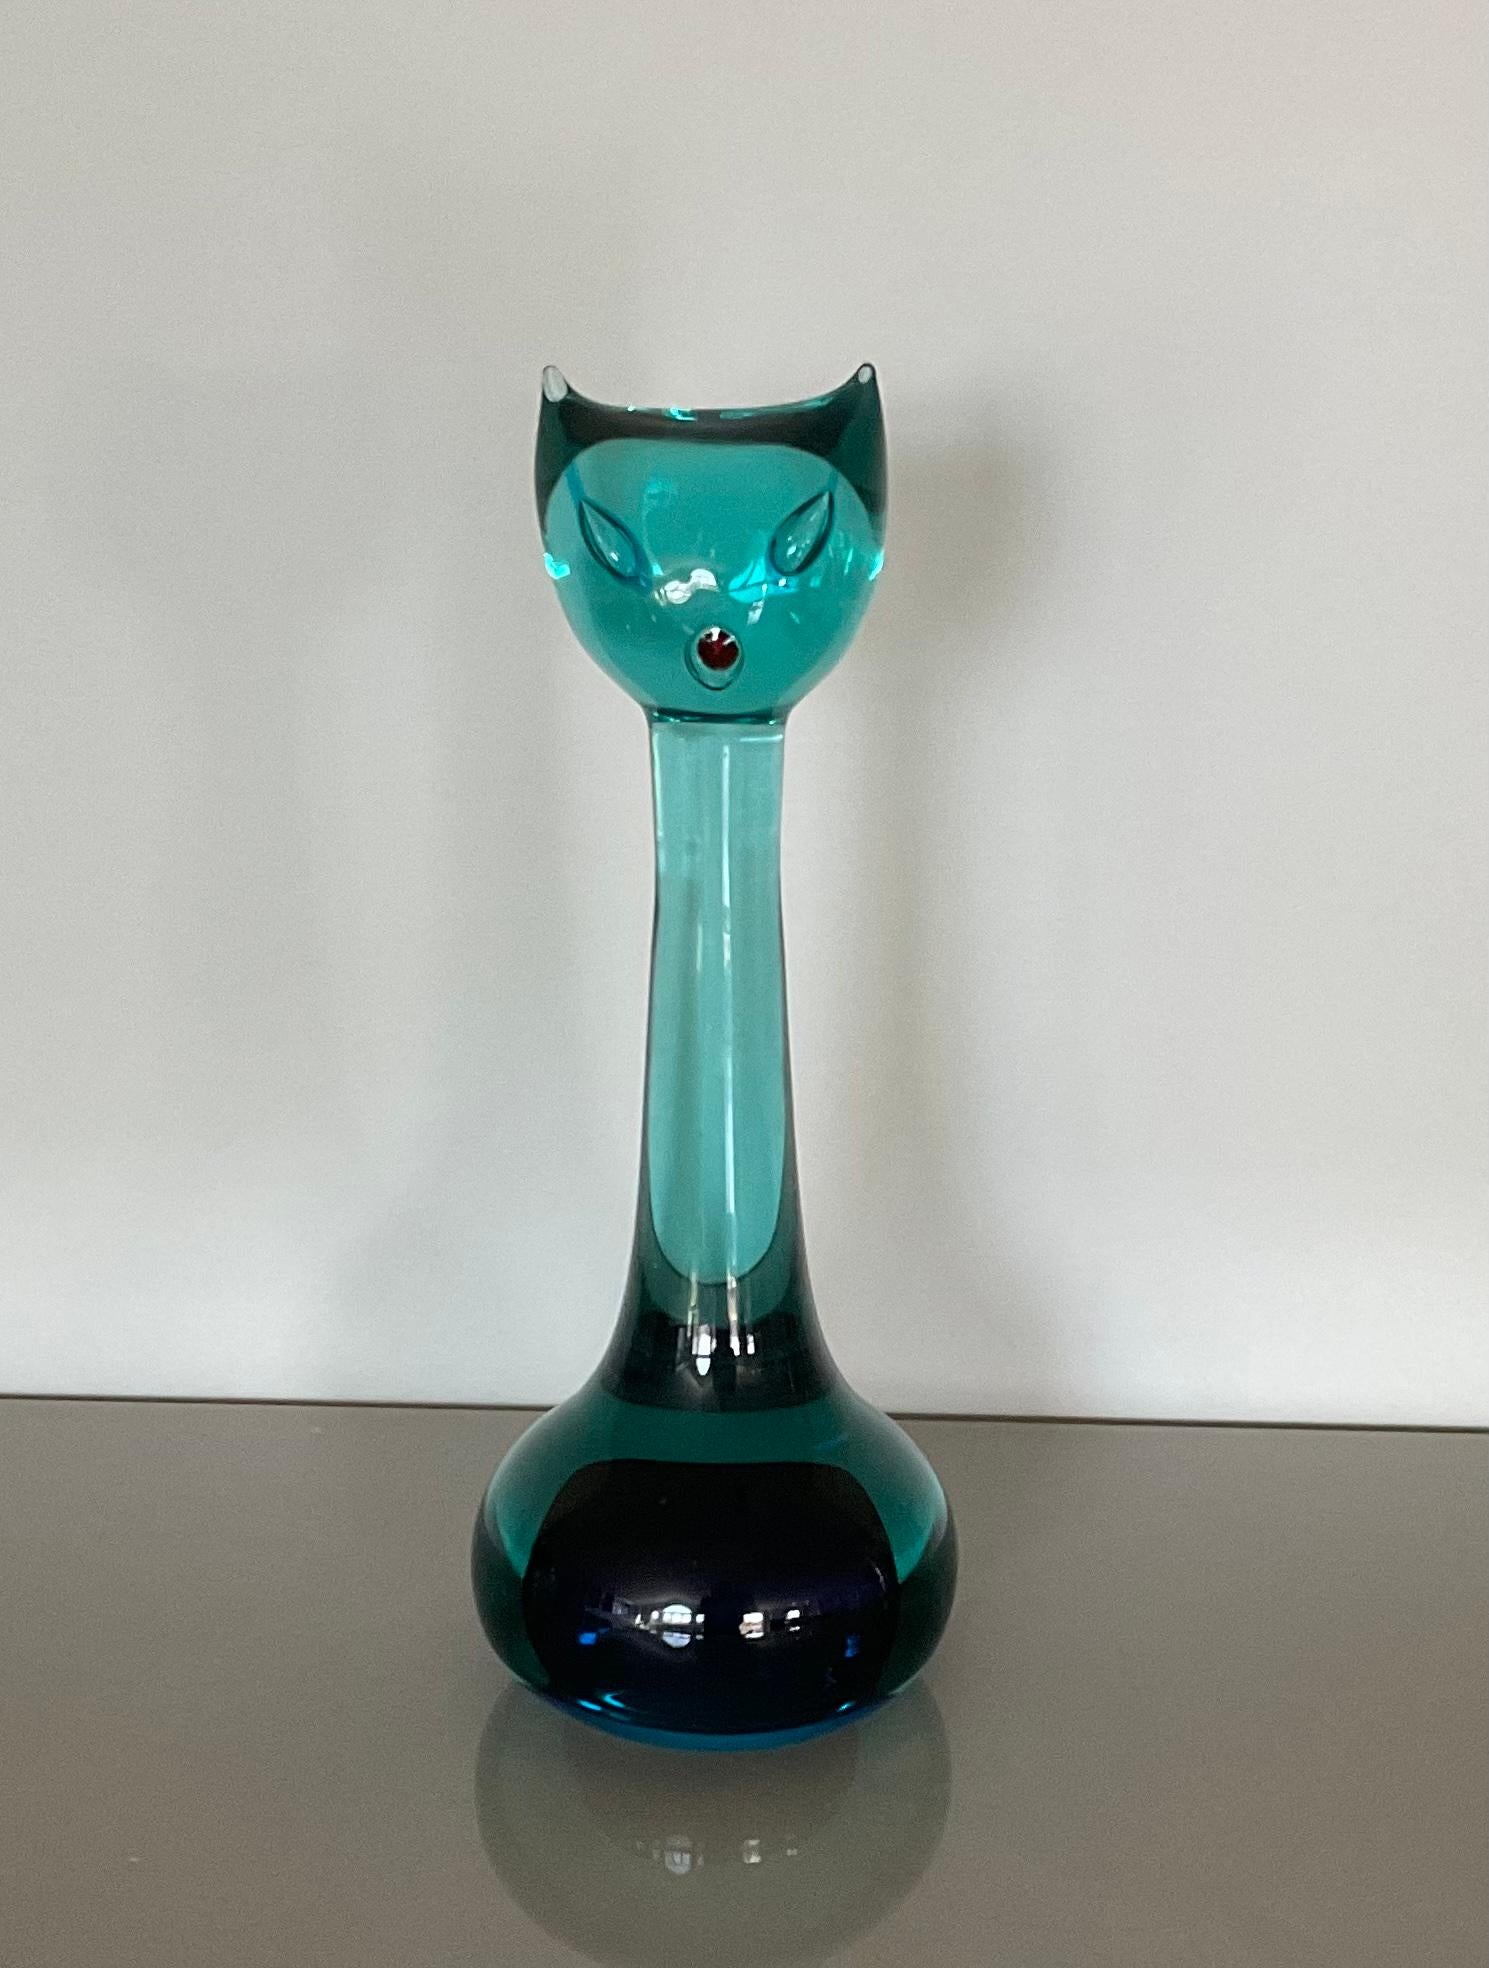 Sculpture de chat en verre soufflé à la bouche de Murano par Antonio Da Ros Cenedese, en verre Sommerso d'un bleu éclatant. Grande taille avec des yeux en forme de bulles. Sculpture étonnante pour une exposition individuelle ou pour enrichir une